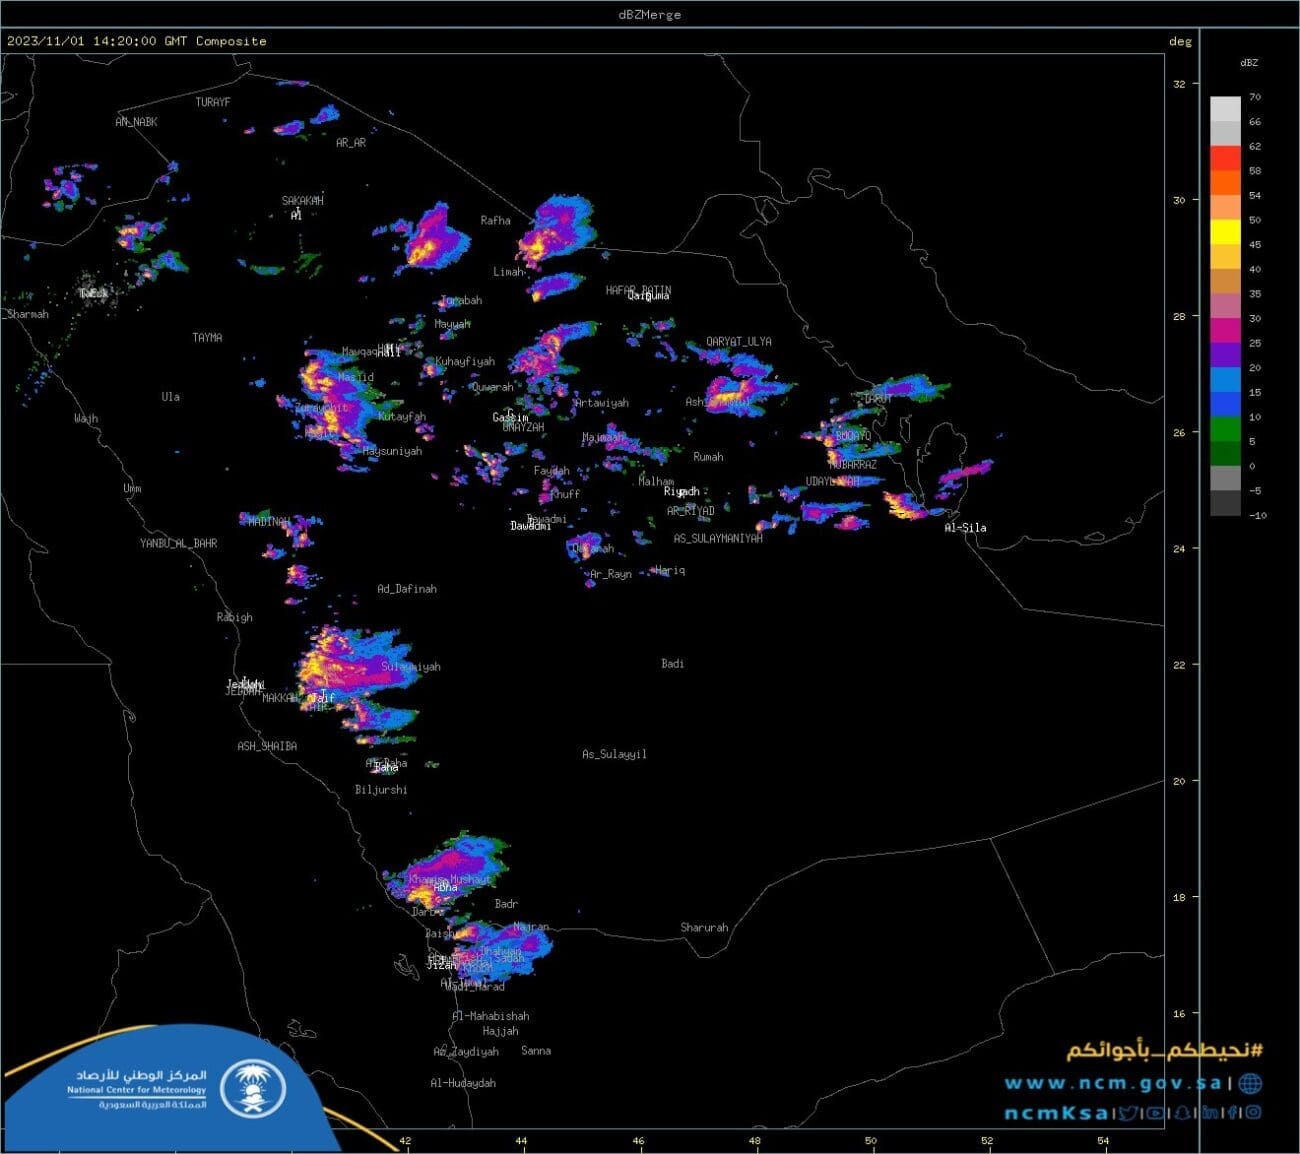 صورة رادارية توضح المناطق التي تشهد أمطار غزيرة إلى متوسطة اليوم 1 نوفمبر - مصدر الصورة: المركز الوطني للأرصاد عبر منصة إكس.